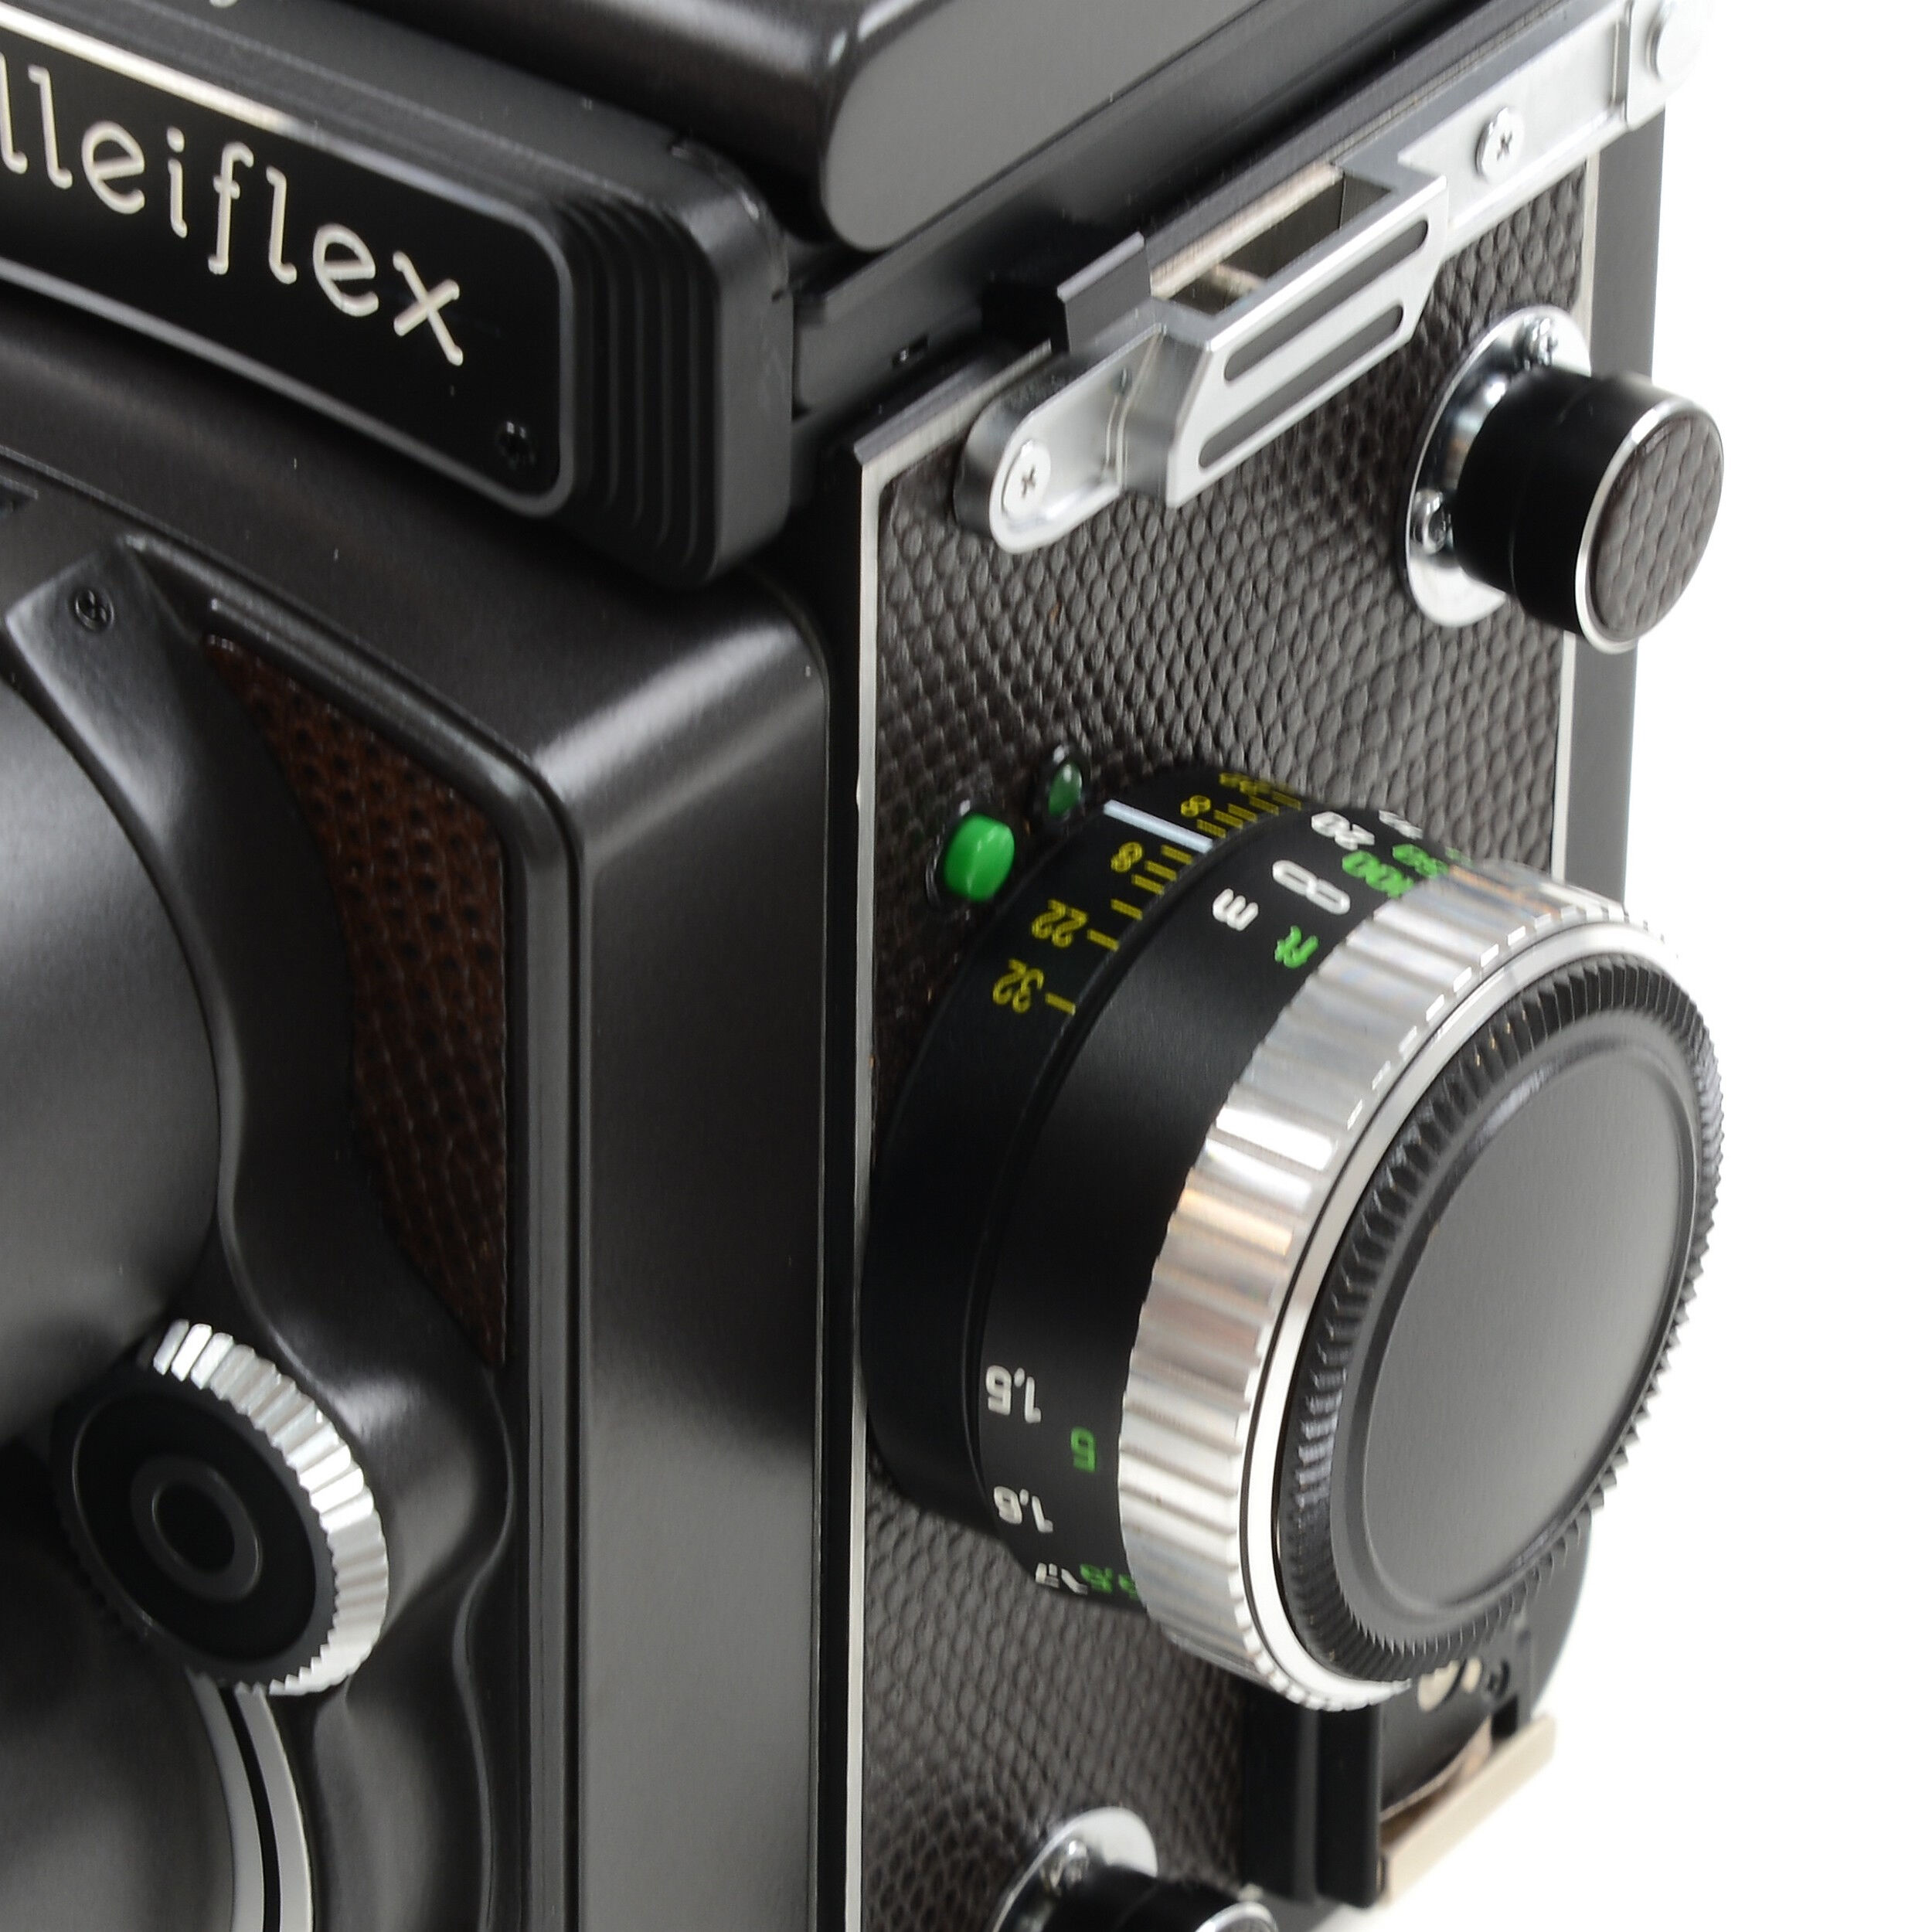 ROLLEIFLEX 4.0 FT TELE-XENAR 135MM HFT + BOX 17004 #4408